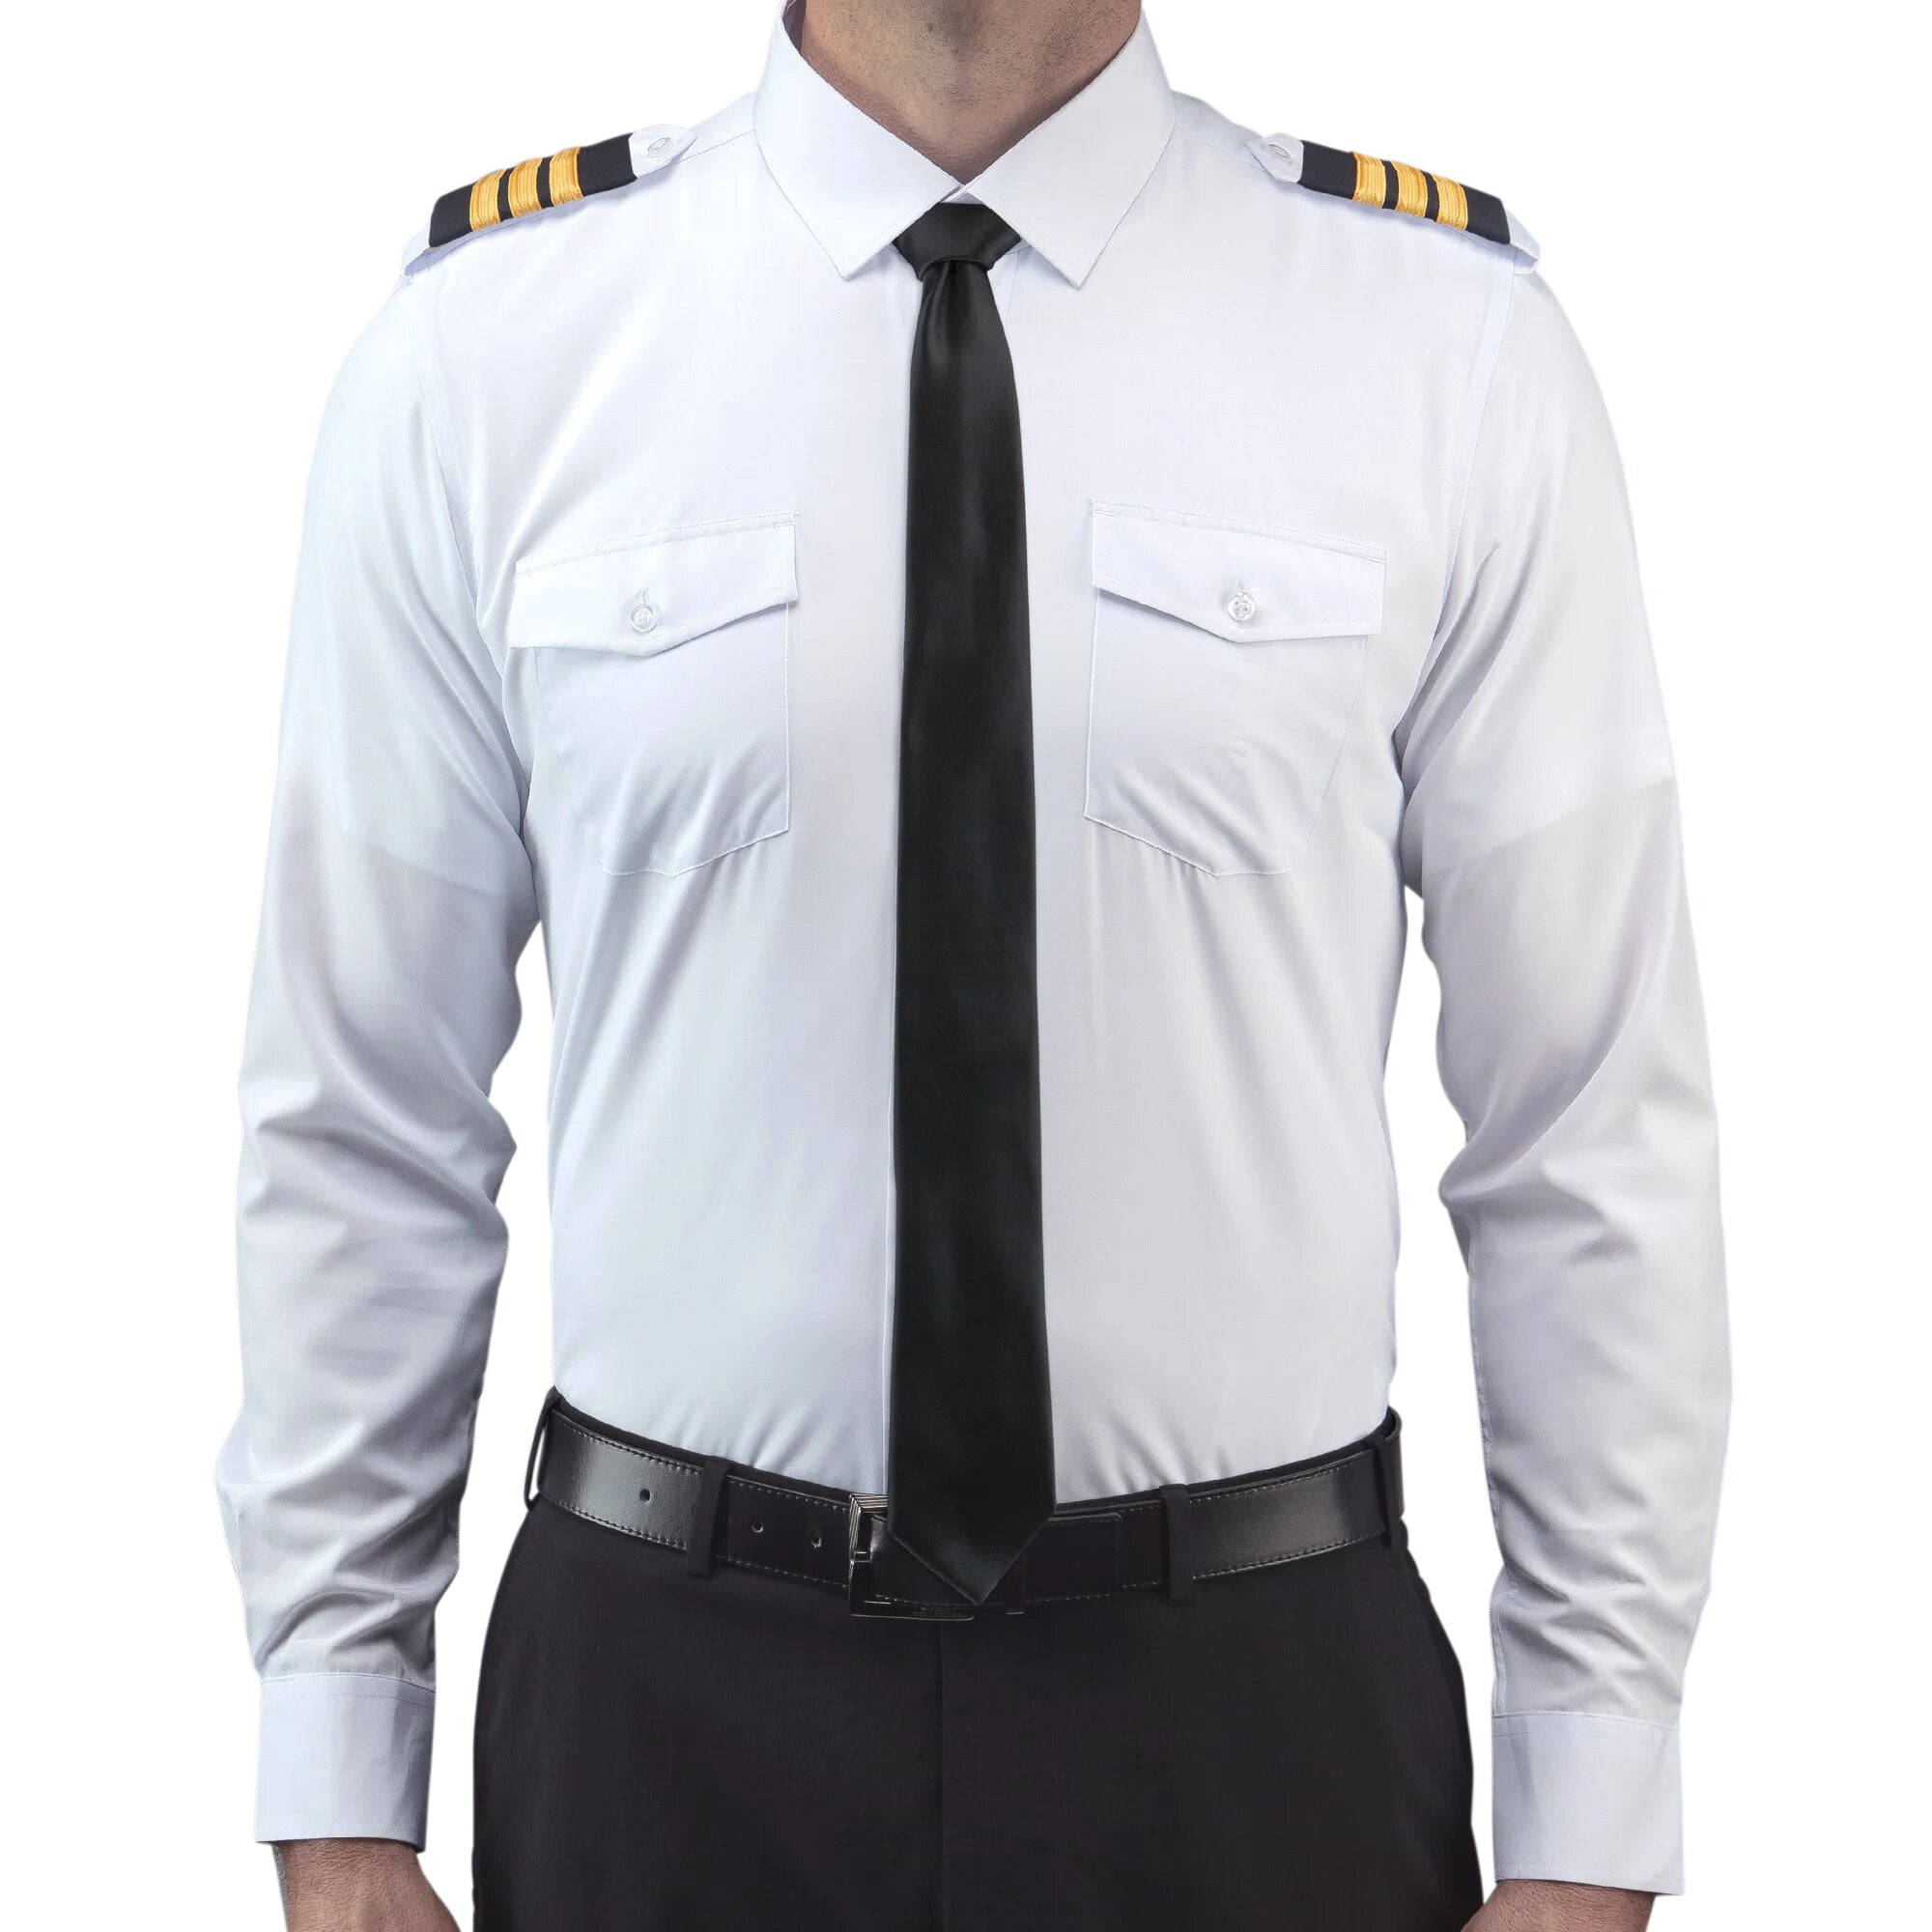 Lift Aviation Flextech Professional Pilot Long Sleeve Shirt - PilotMall.com